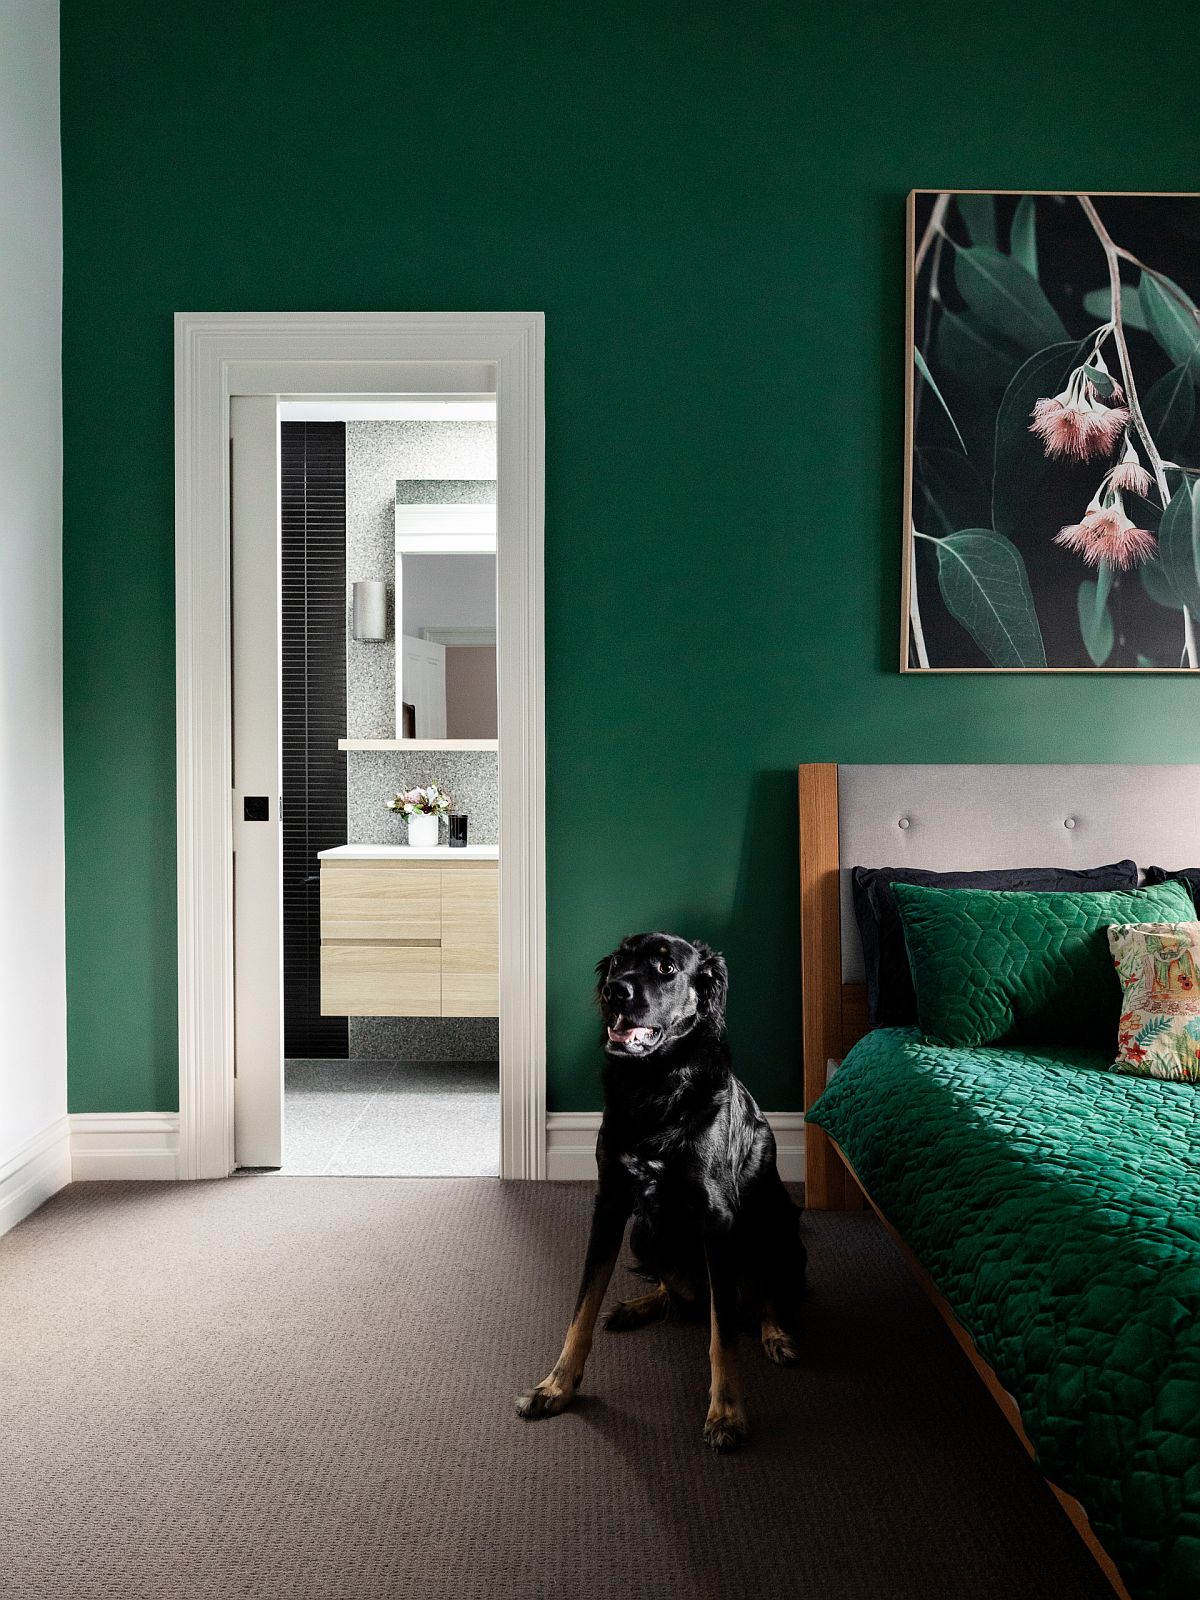 Phòng ngủ hiện đại với màu xanh lá cây đậm với các điểm nhấn màu trắng tạo cảm giác sảng khoái và tinh tế